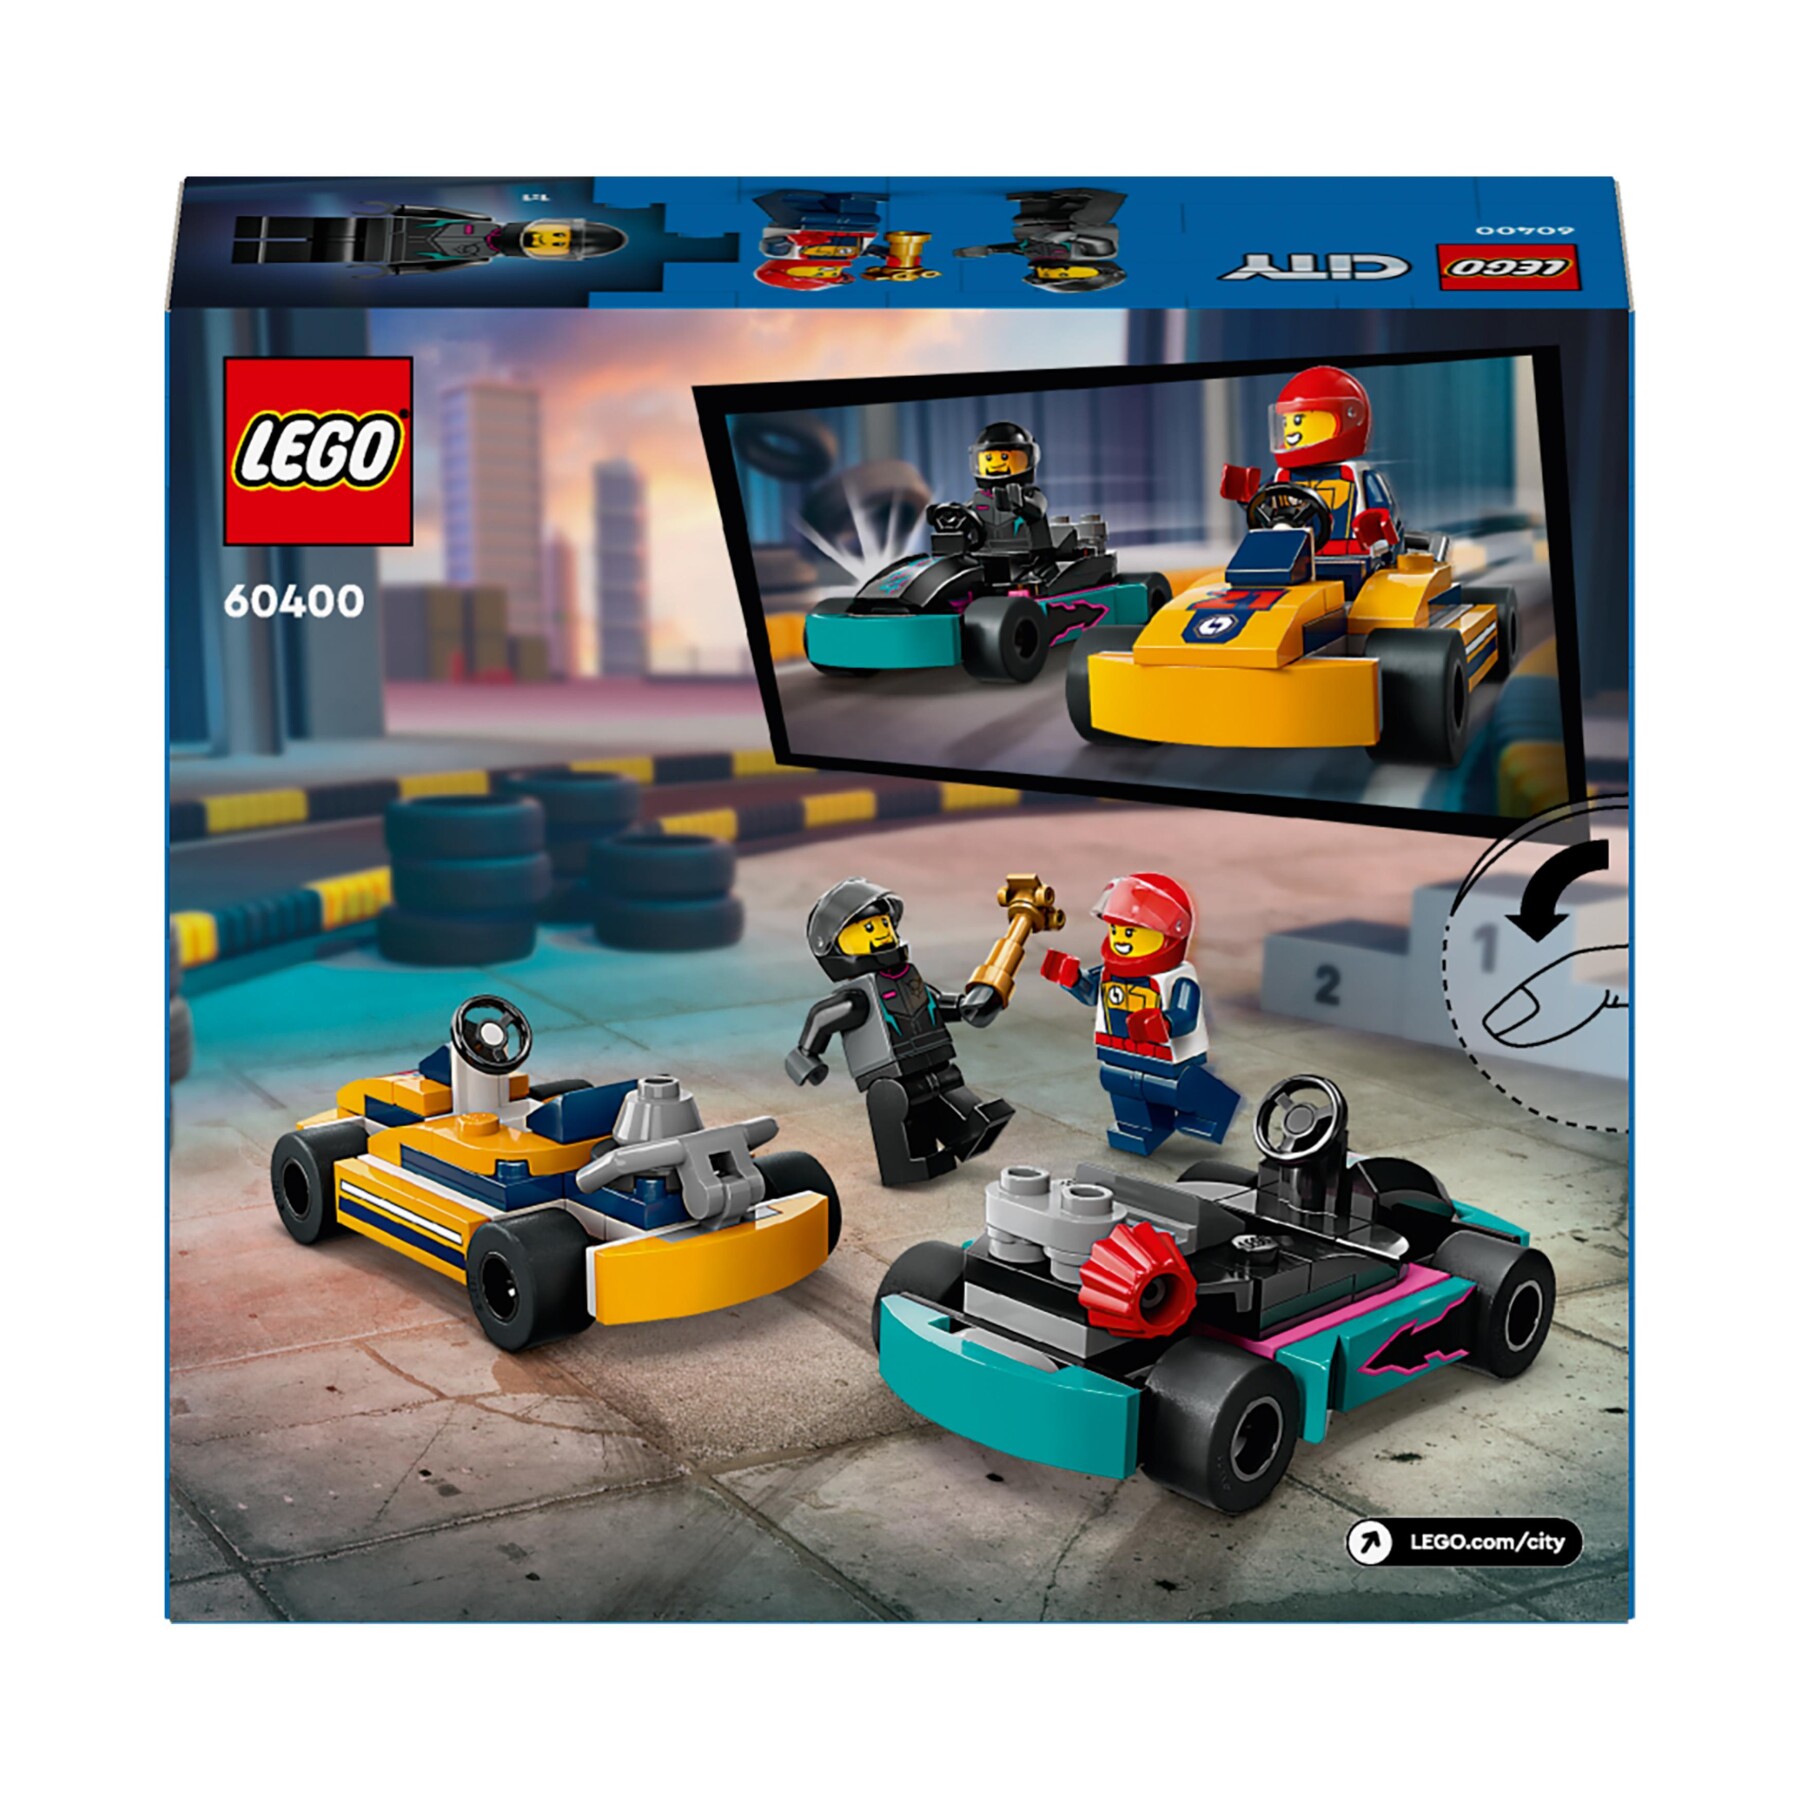 LEGO CITY 60400 GO-KART E PILOTI, MODELLINI DA COSTRUIRE DI MINI GO KART DA  CORSA, VEICOLI GIOCATTOLO PER BAMBINI DI 5+ ANNI - Toys Center